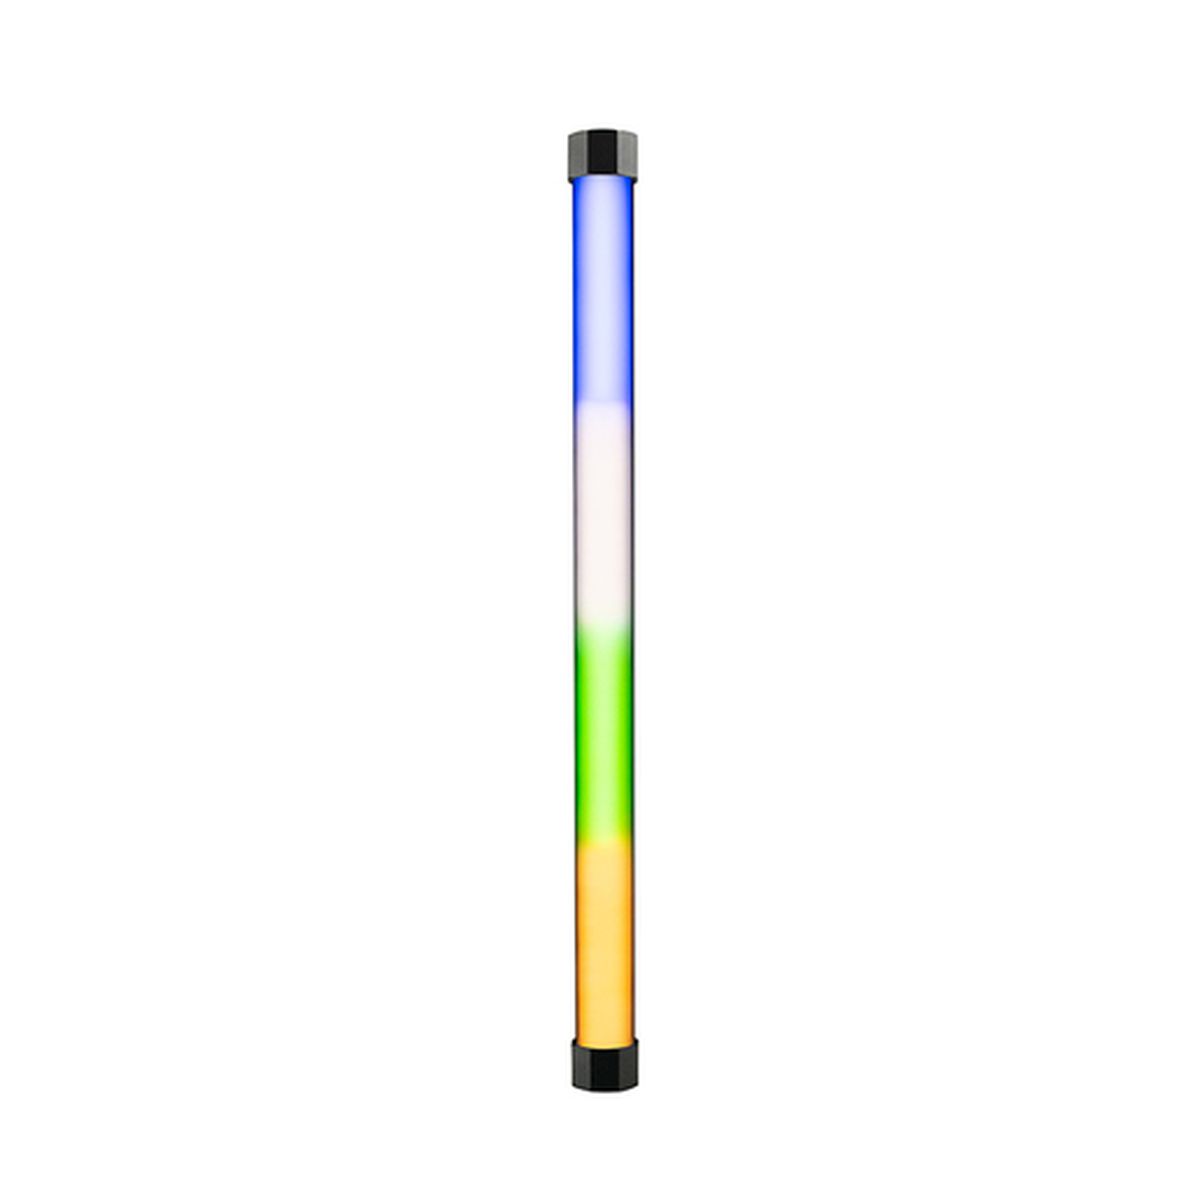 Nanlite PavoTube II 15X 2 Kit RGBWW Farb-Effektleuchte